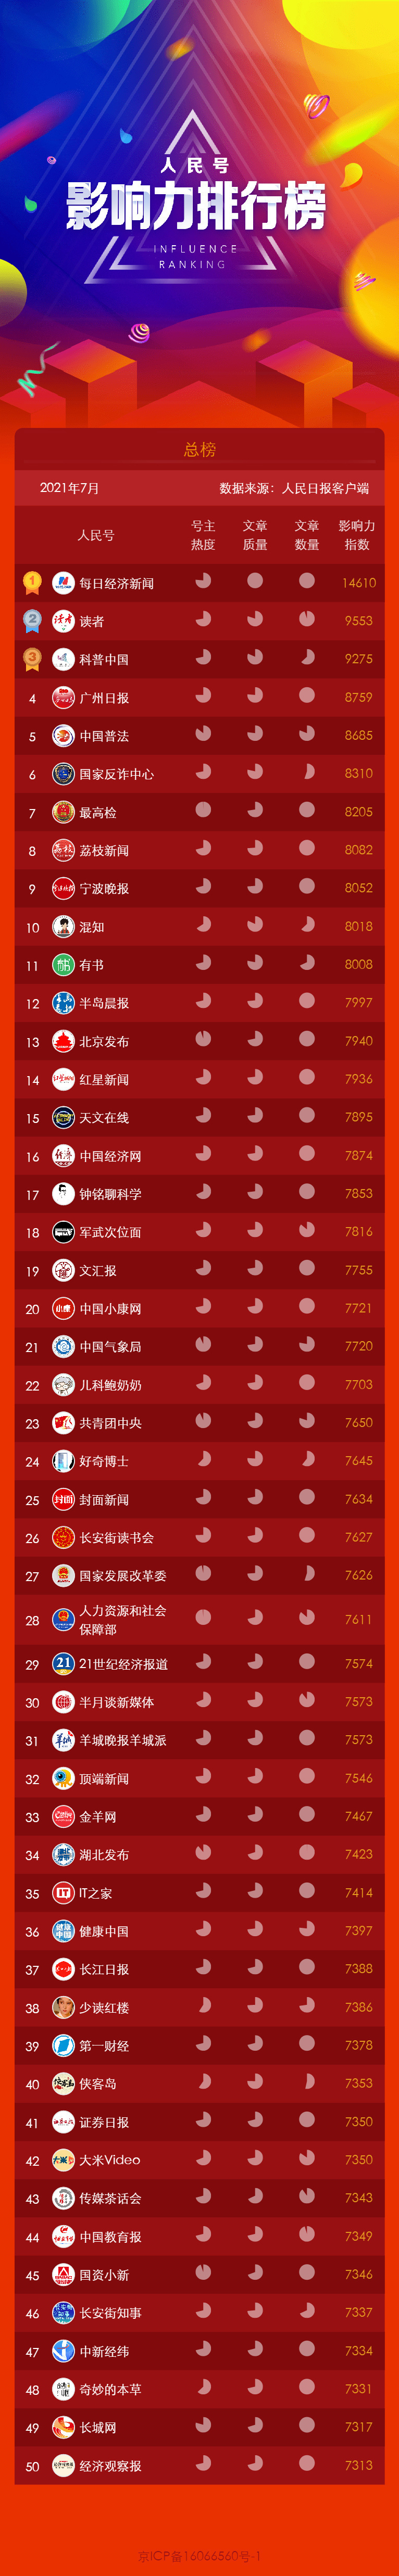 人民号7月影响力排行榜出炉   中国小康网位列媒体榜前10